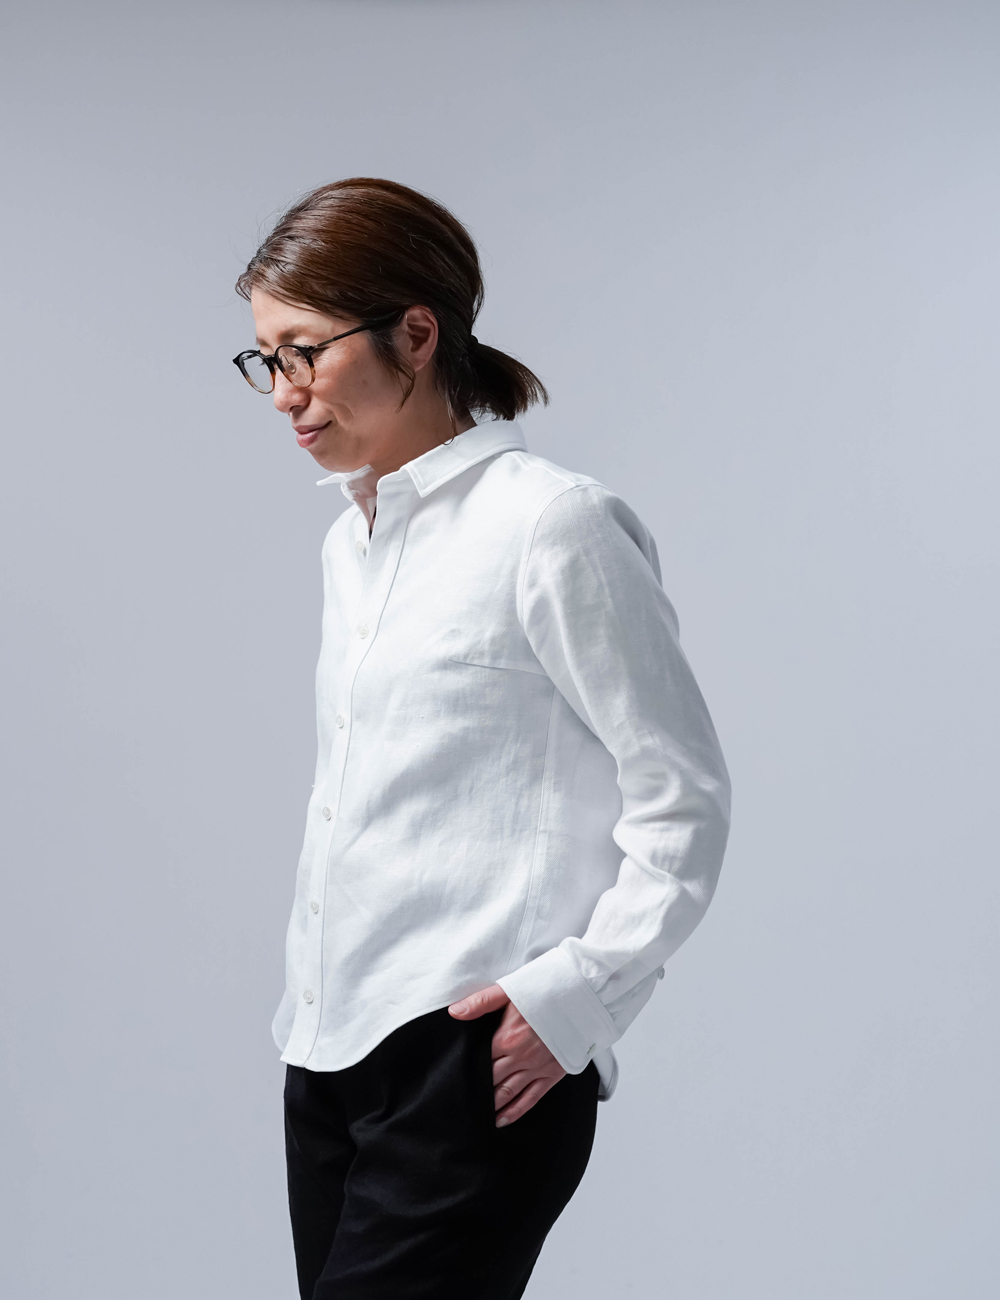 【プレミアム】 Linen Shirt wafu史上最高の上質リネン シャツ / ホワイト t031a-wht3